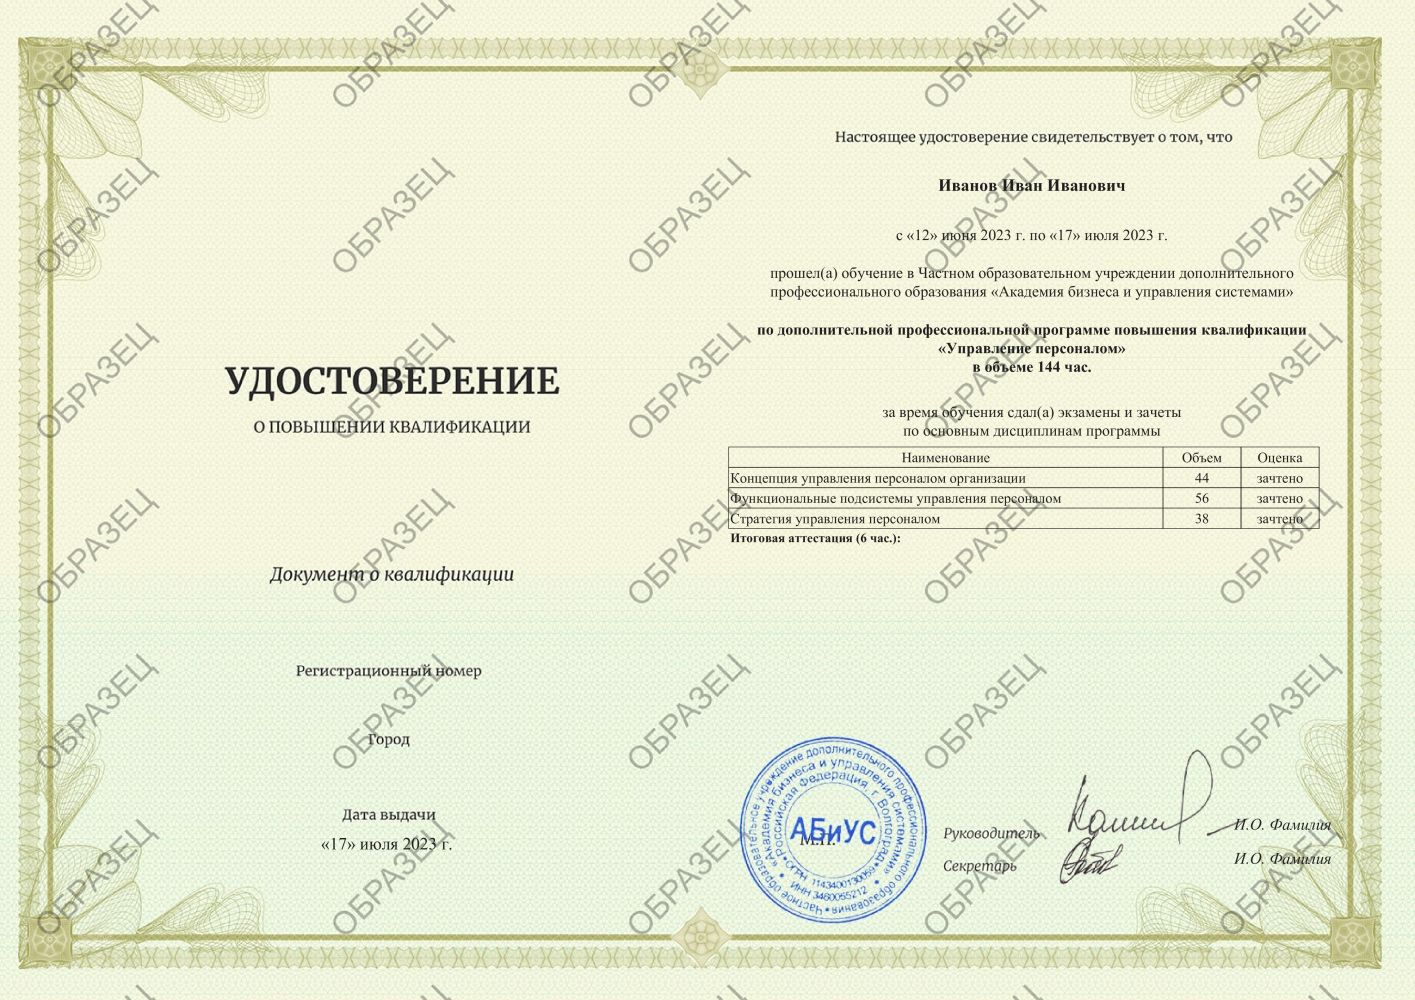 Удостоверение Управление персоналом 144 часа 5750 руб.